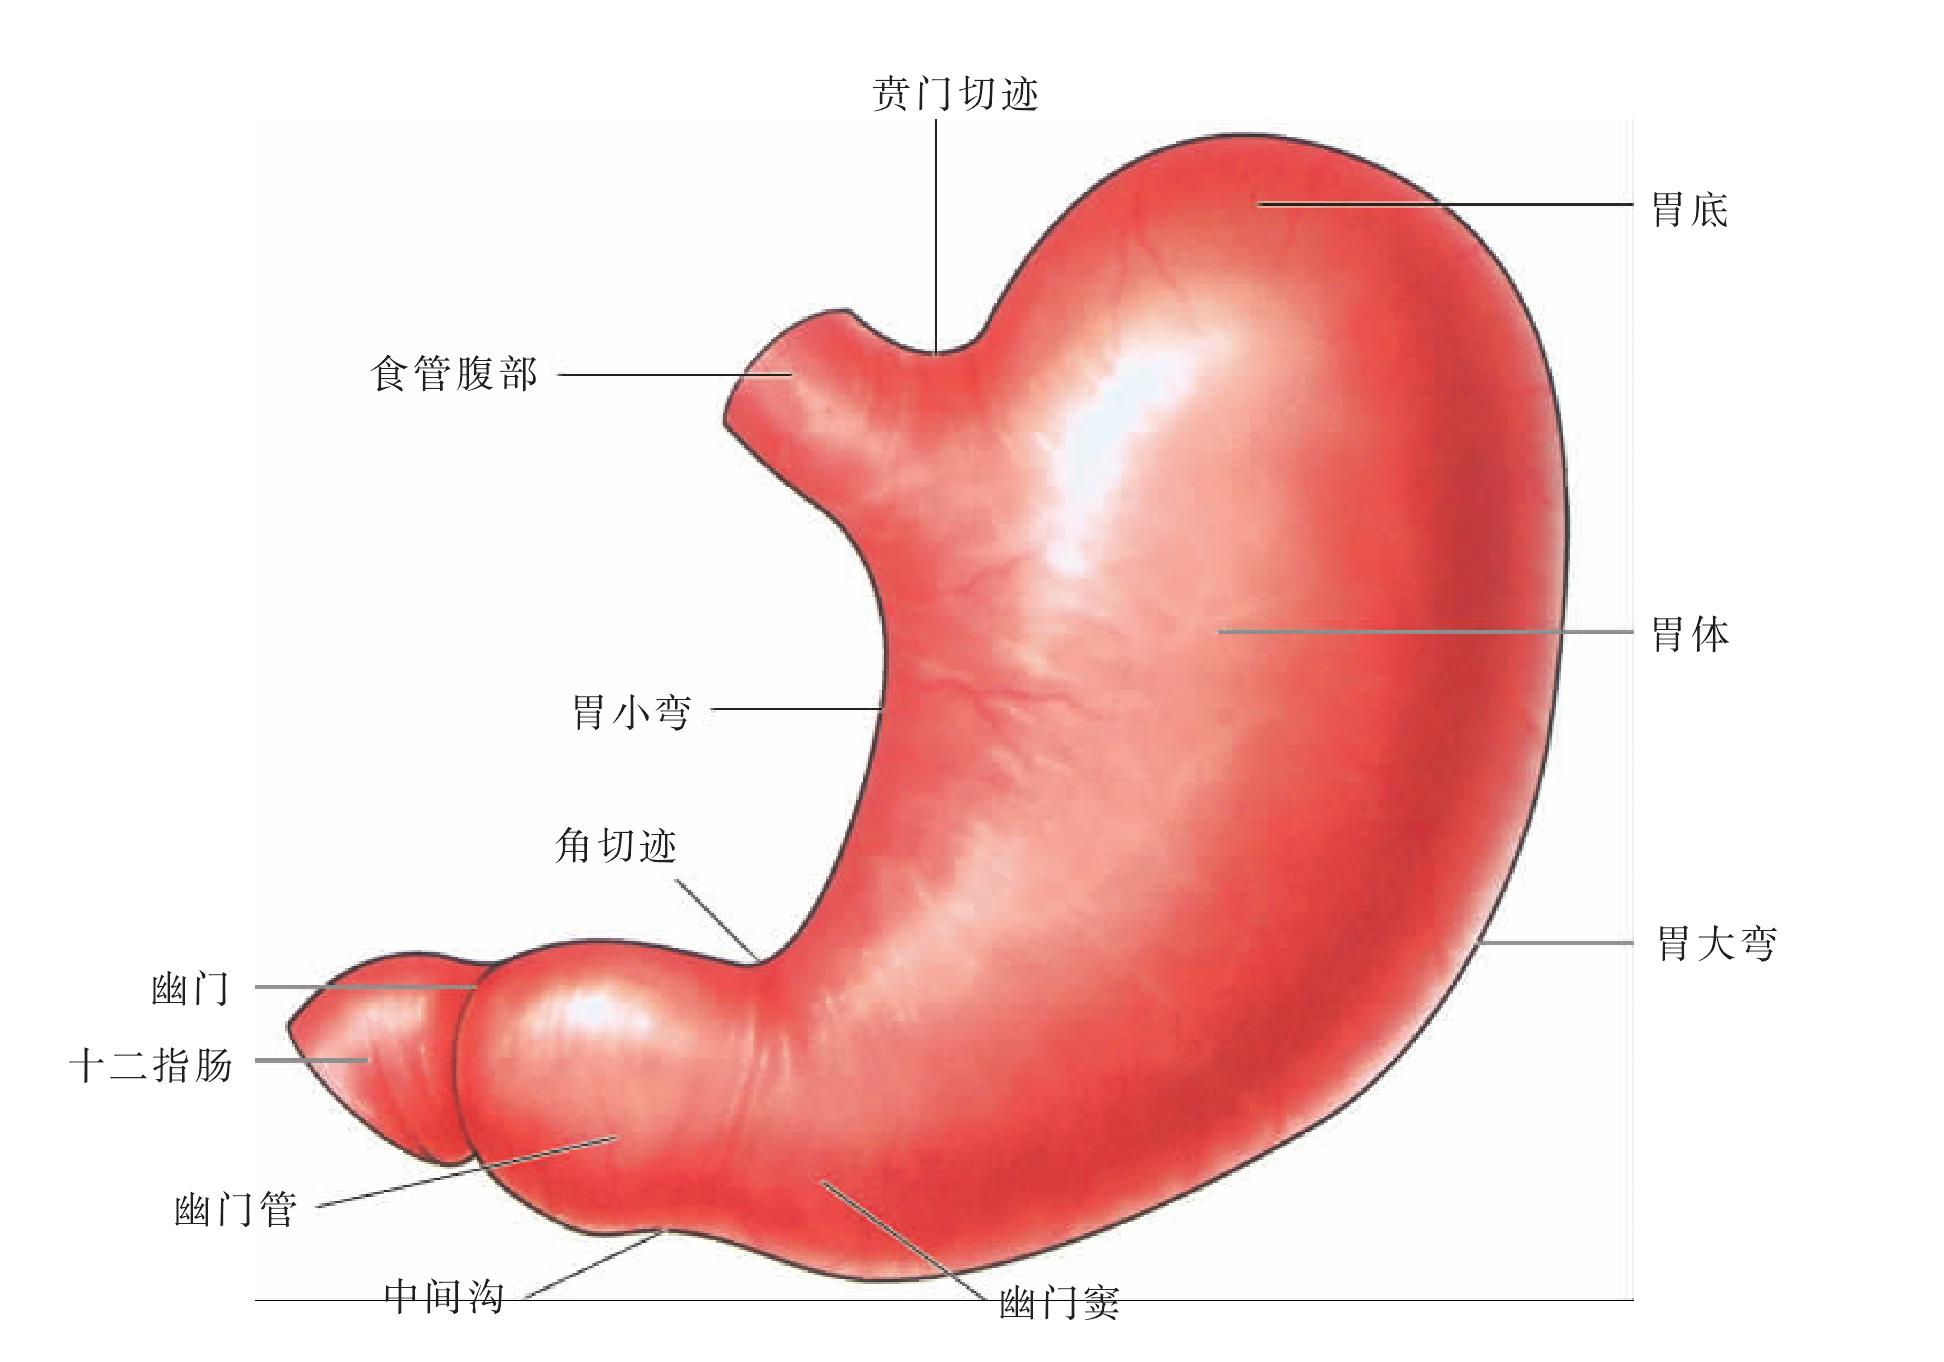 胃横断面解剖3D模型 - TurboSquid 1511045